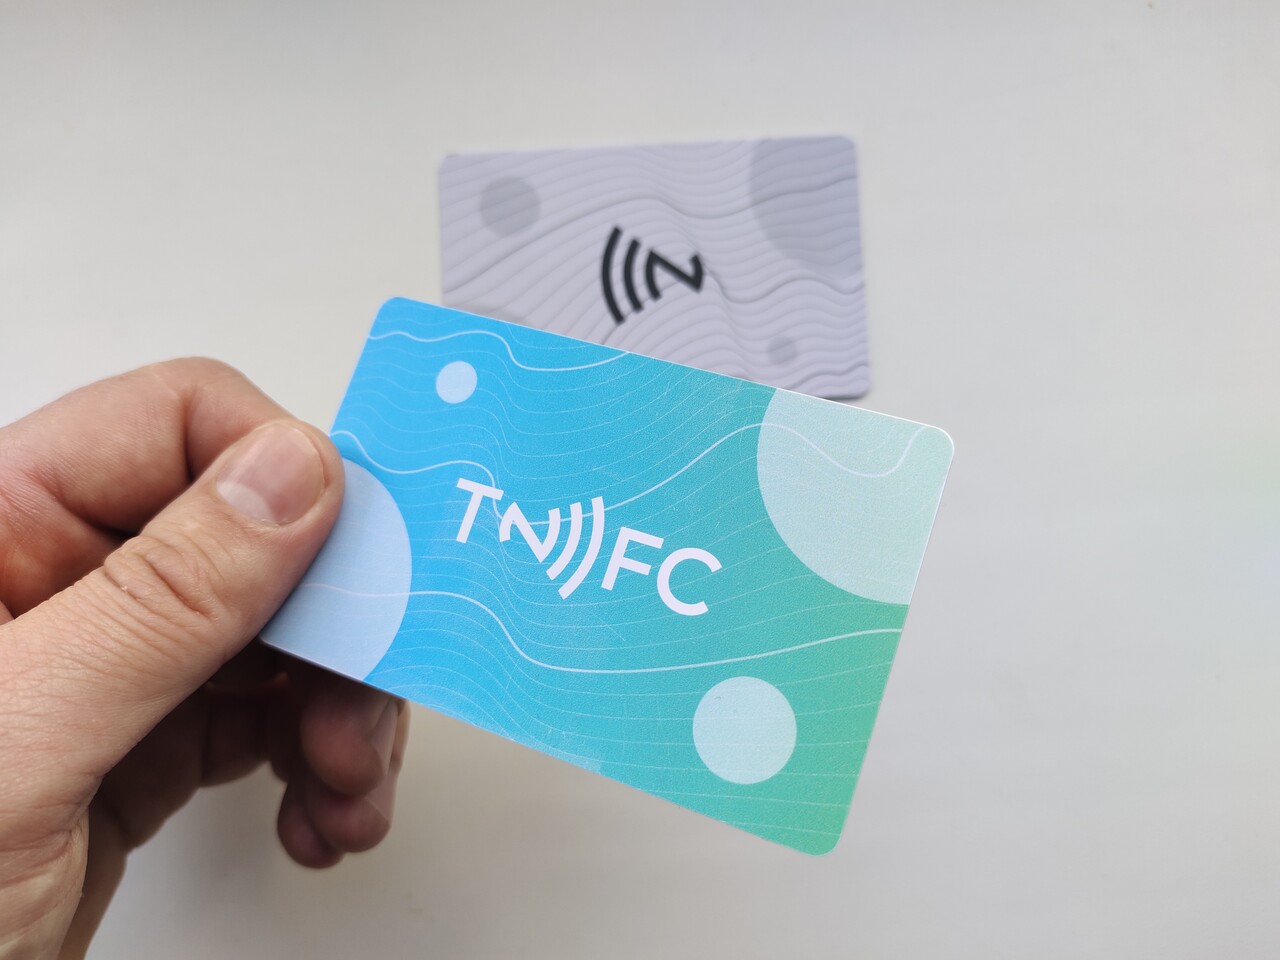 Телефон электронная визитка. Электронная визитка. NFC визитка. Визитка с NFC чипом. Визитка с NFC меткой.